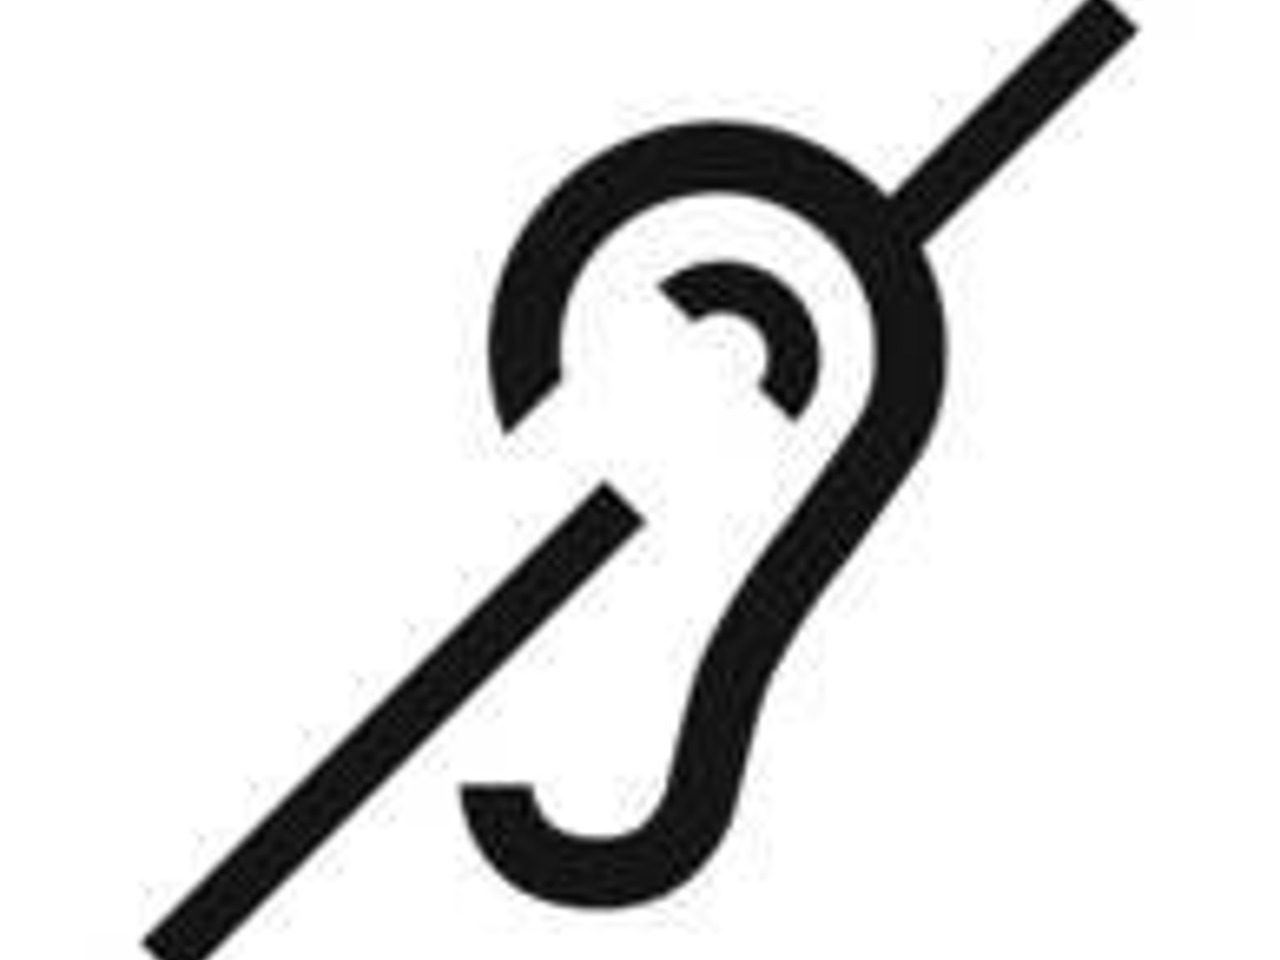 pictogramme officiel pour représenter le handicap auditif : oreille traversée par une barre oblique